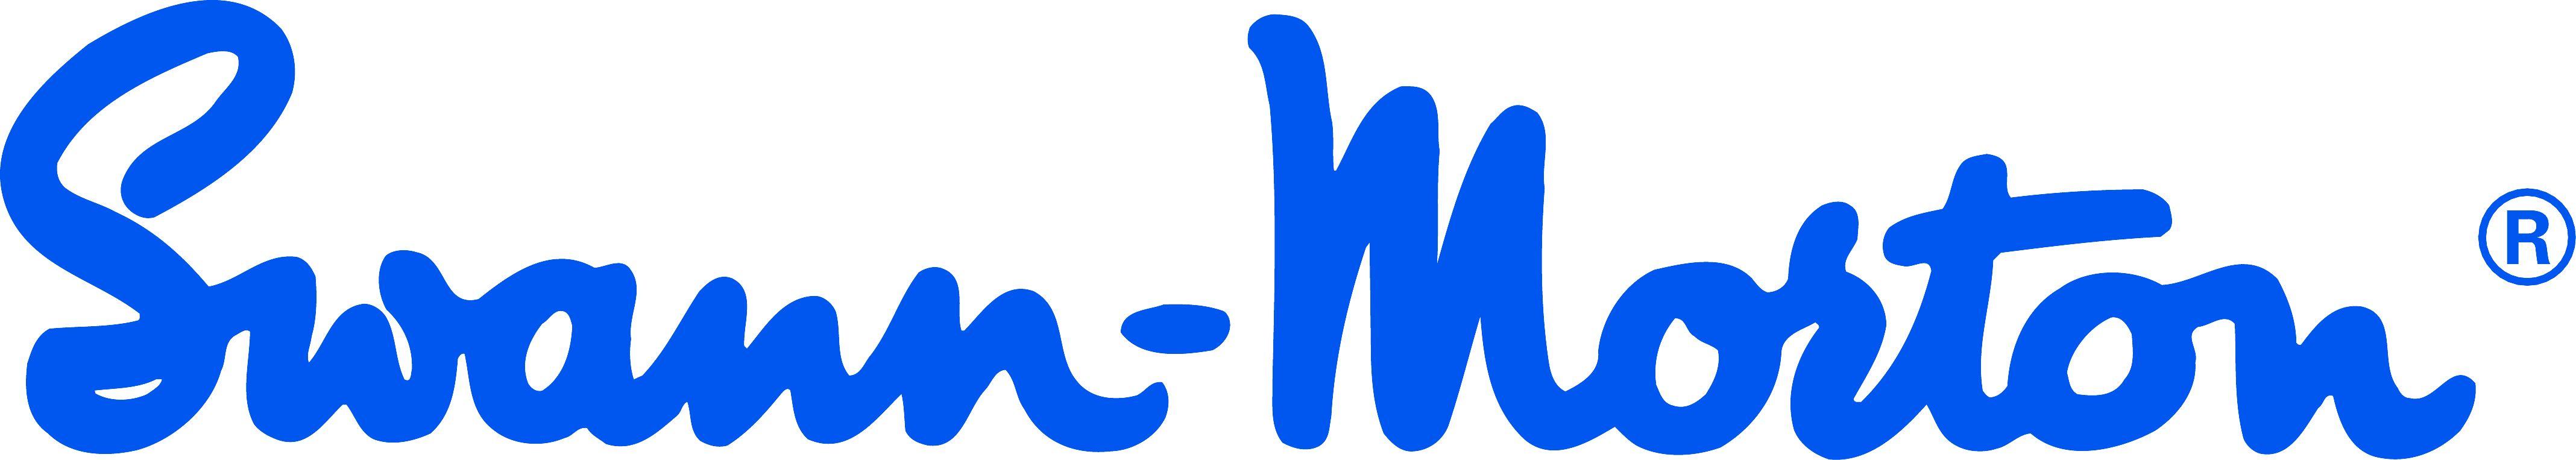 Logo of SWANN MORTON